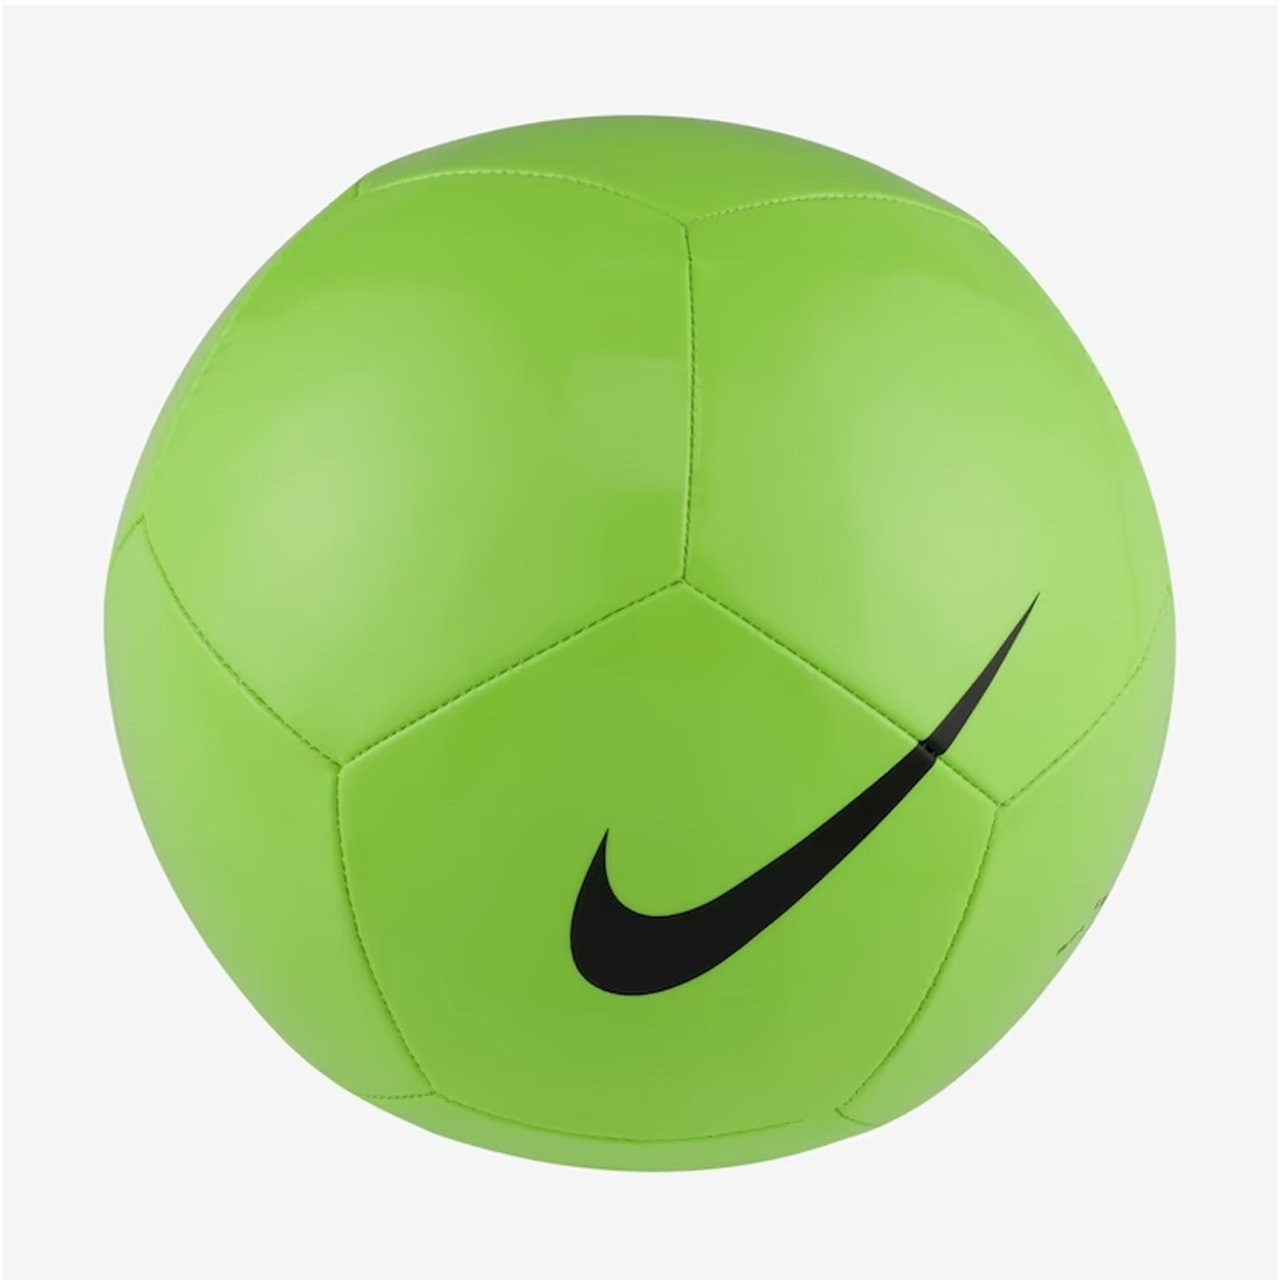 Preços baixos em Bolas de futebol Nike